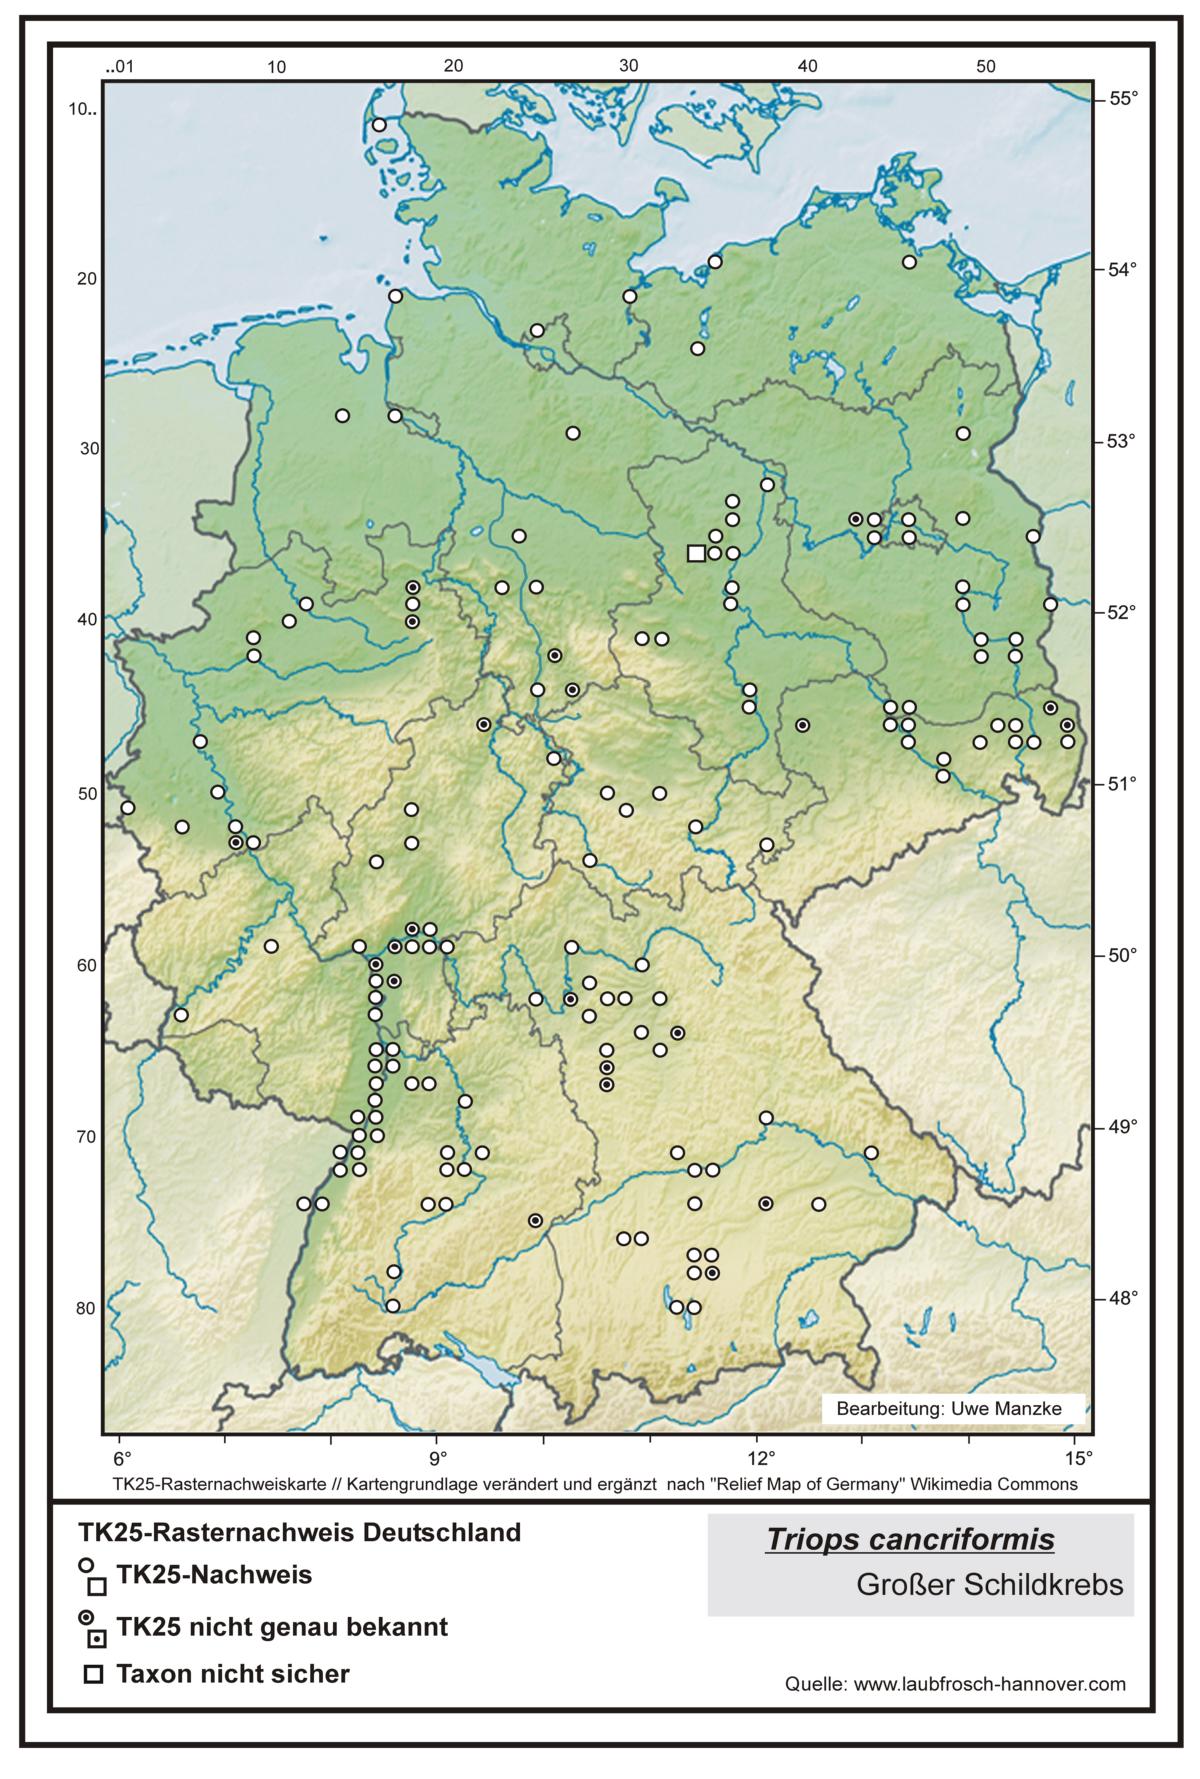 Triops cancriformis  TK25-Rasternachweiskarte Deutschland, Bearbeitung Uwe Manzke; Kartengrundlage: verändert n. Relief Map of Germany Wikimedia Commons https://commons.wikimedia.org/wiki/File:Relief_Map_of_Germany.svg